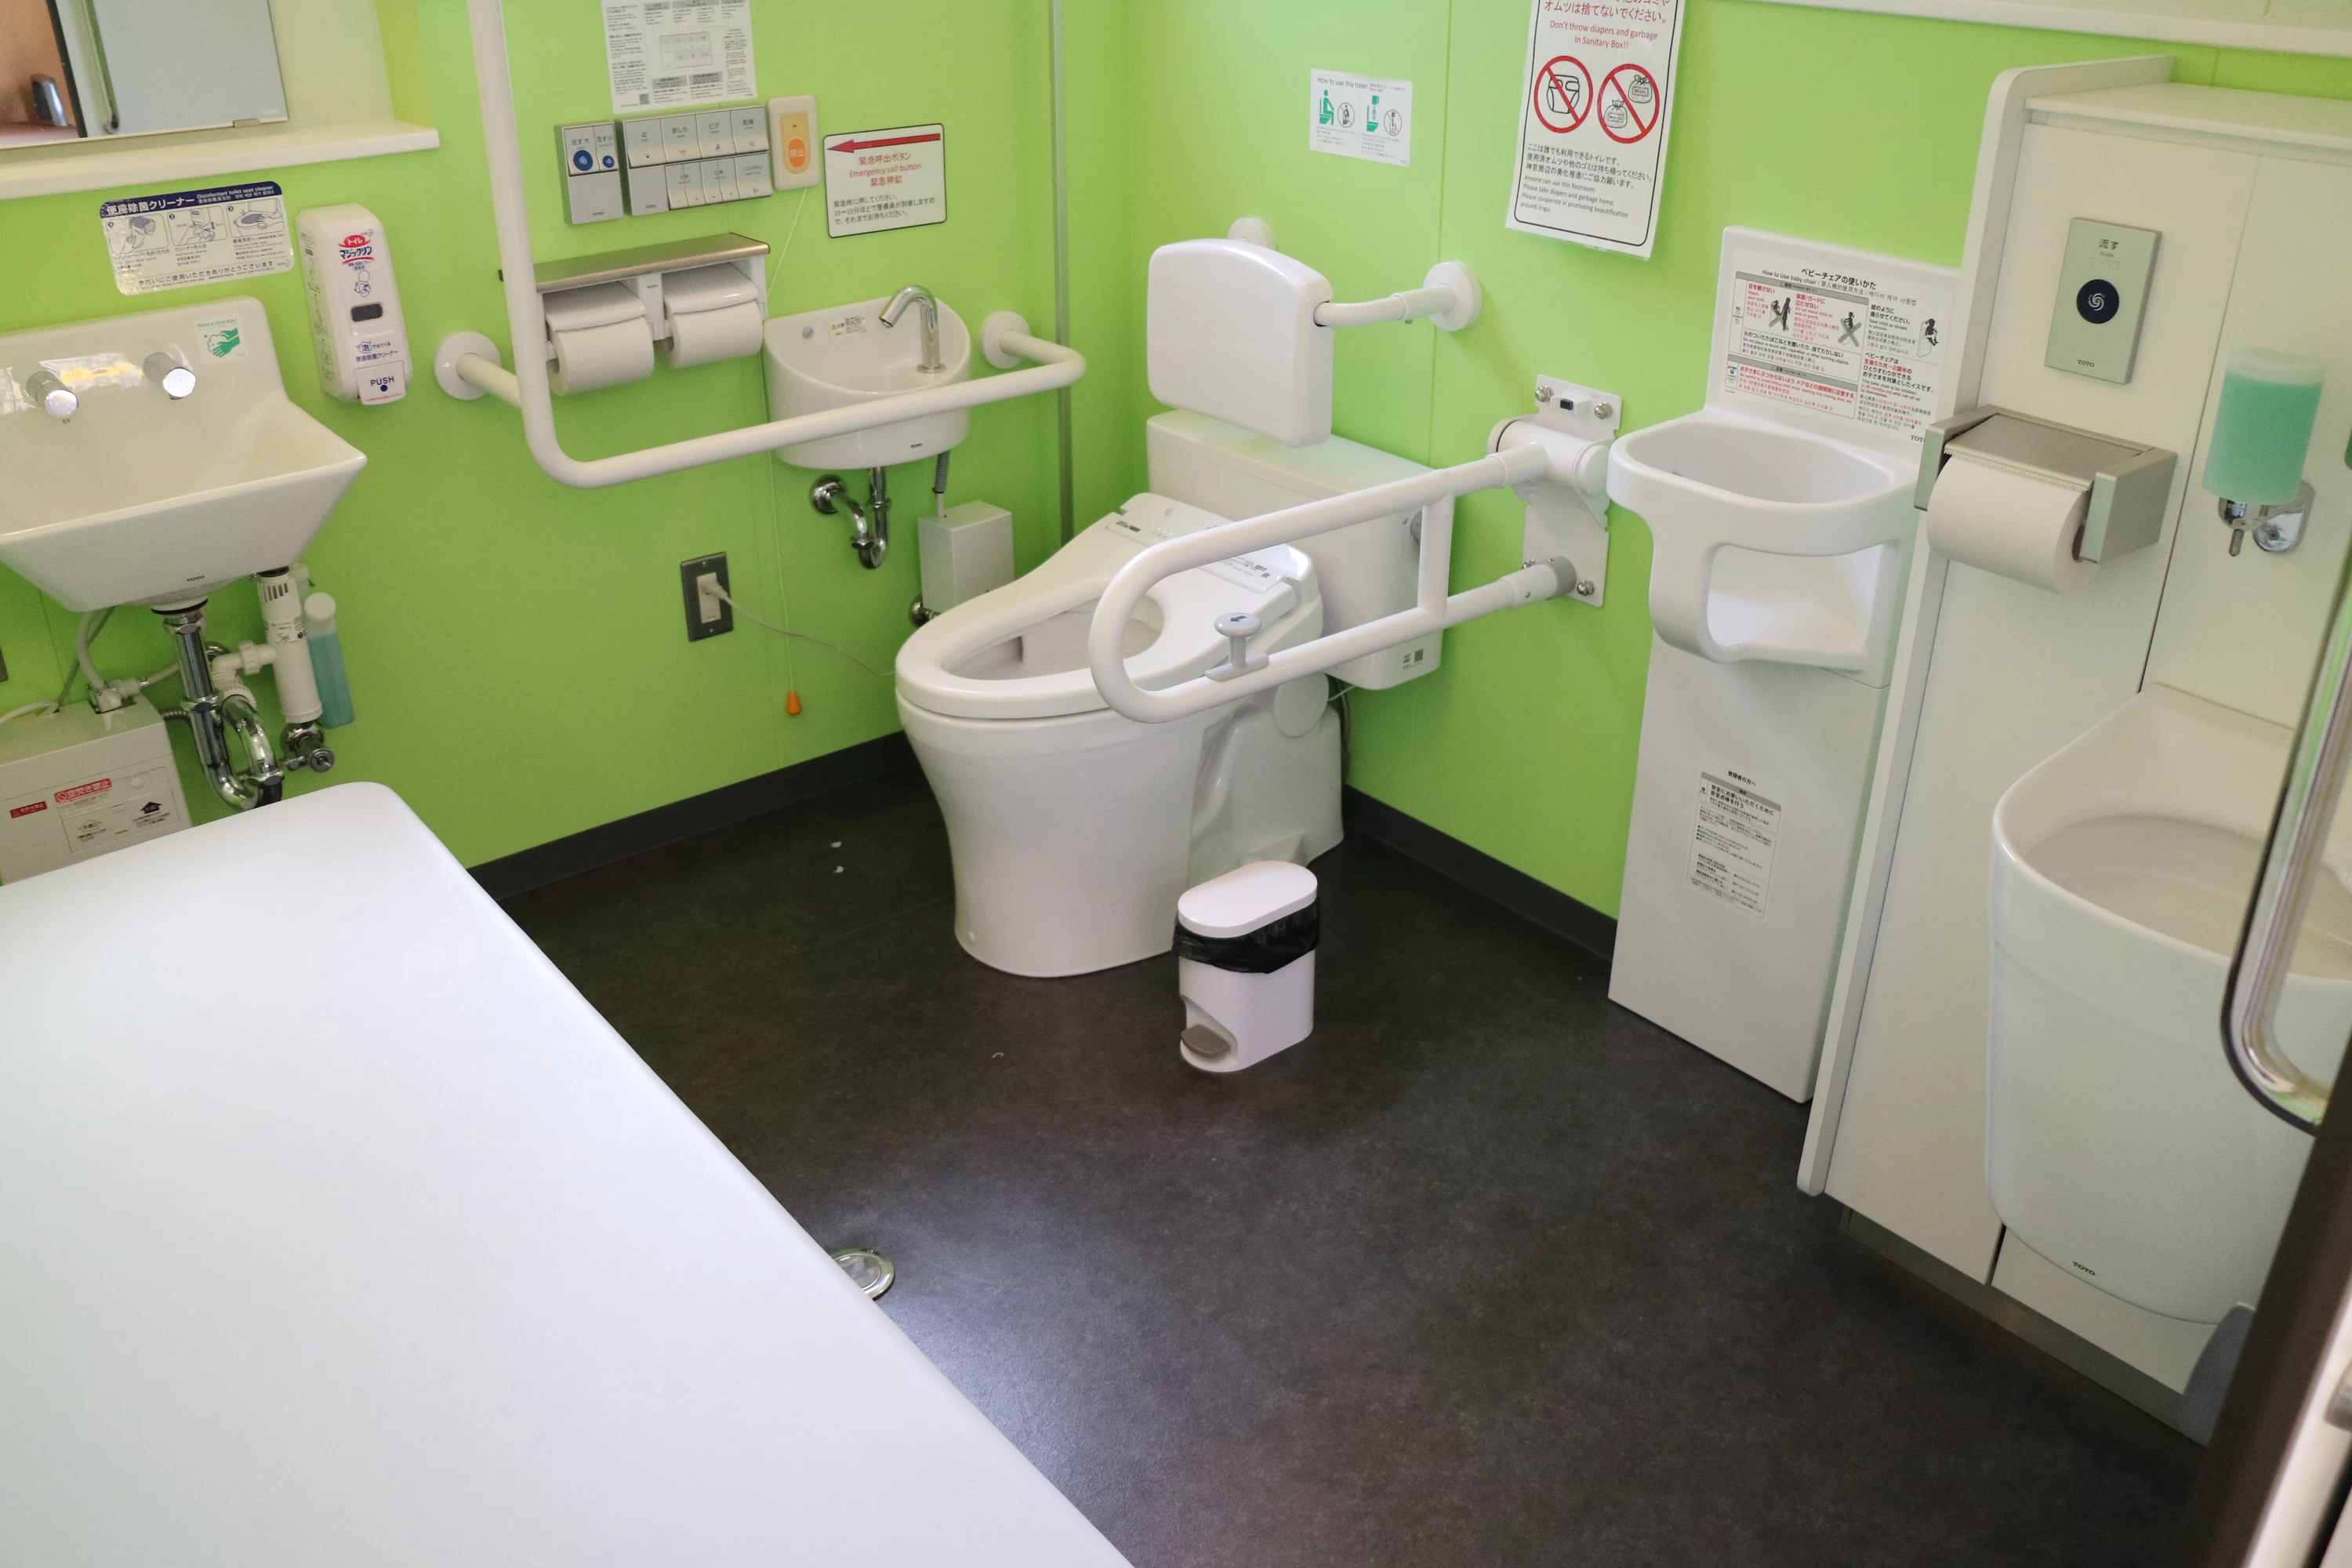 宇治浦田街路広場公衆トイレ内にある右側の多機能トイレ